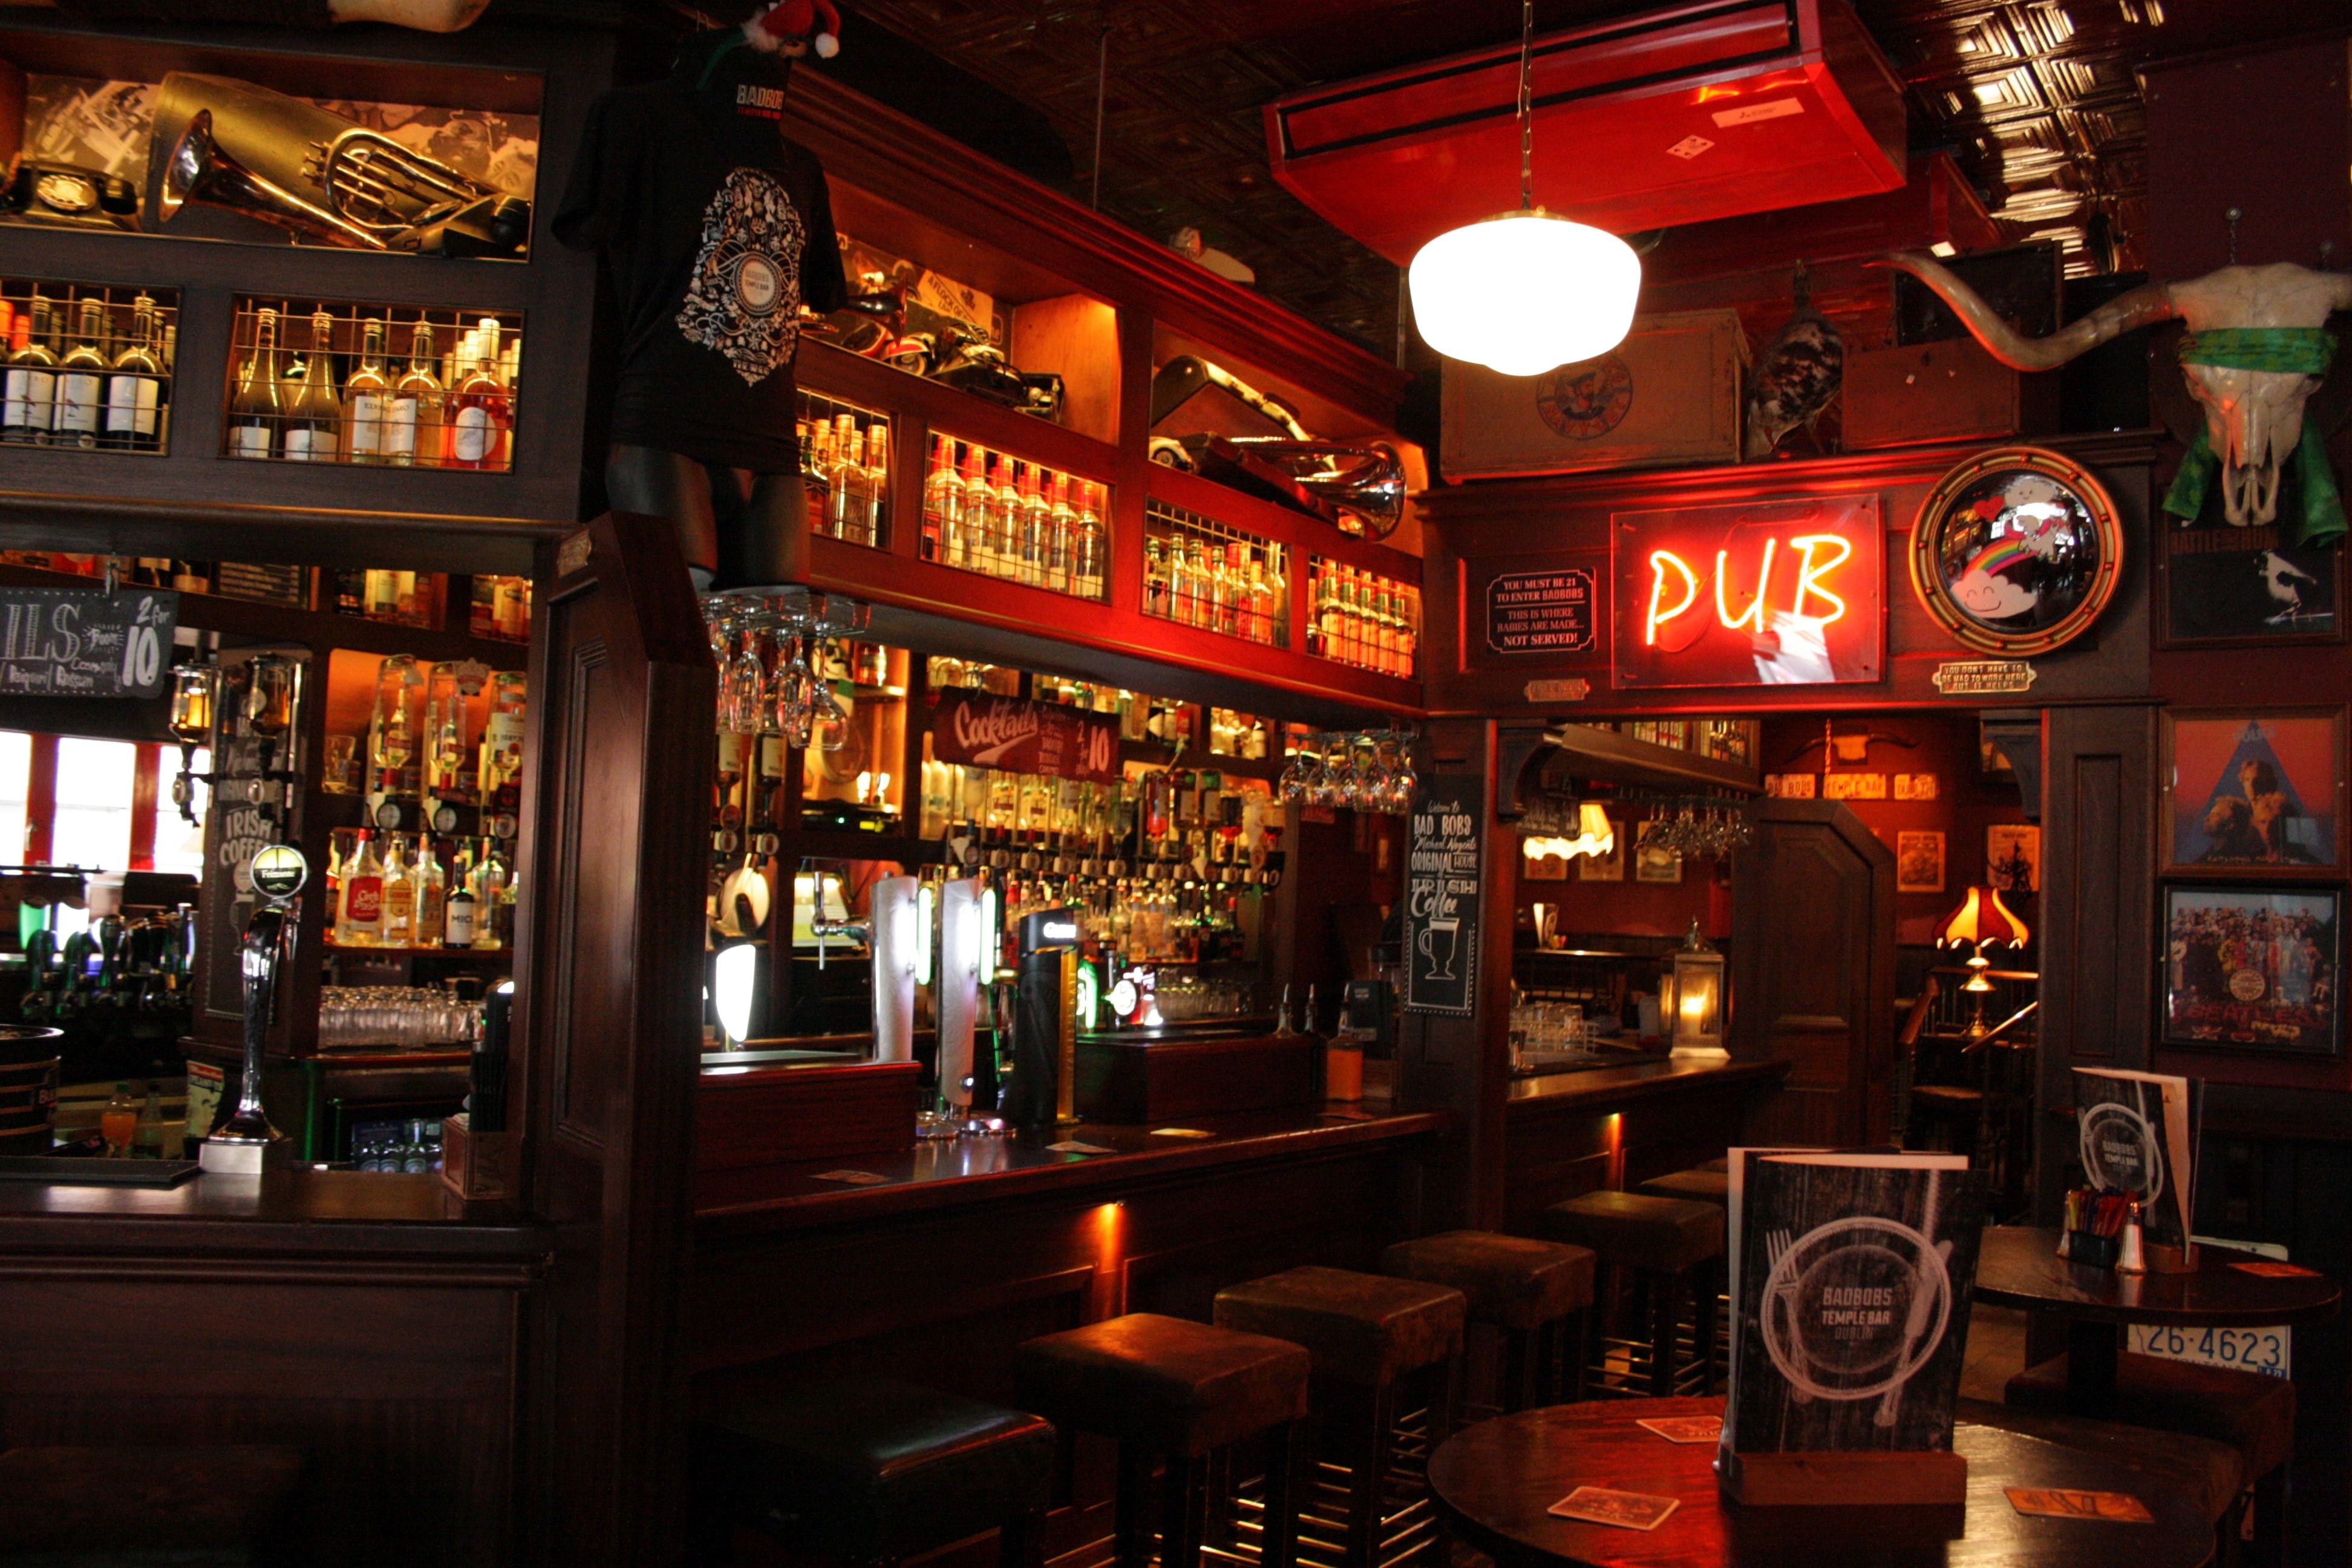 pub bar counter, ireland, dublin, irish, irish pub, bar - drink establishment